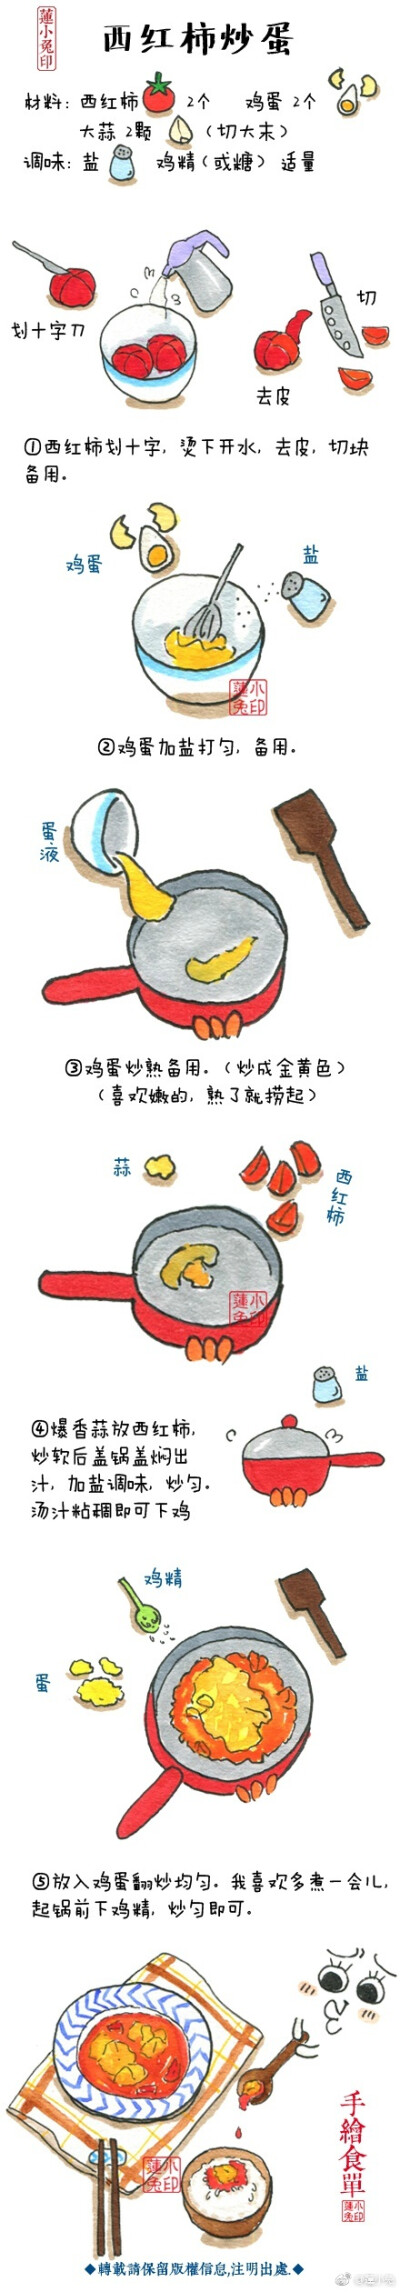 莲小兔 手绘系列美食——西红柿炒蛋